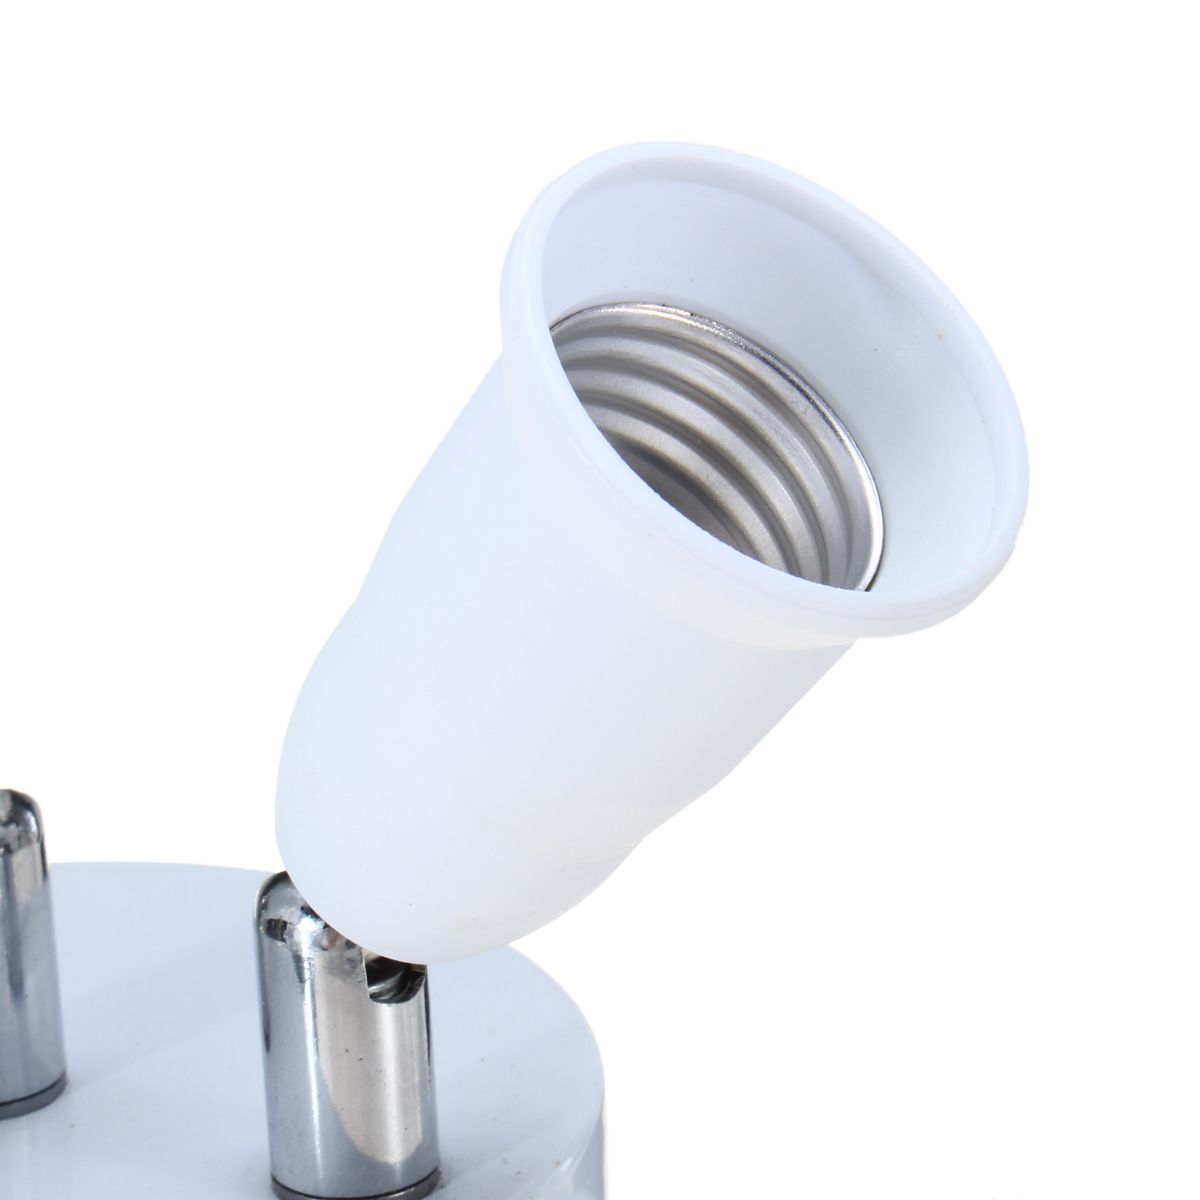 AC100-240V-Adjustable-5-in-1-4A-E27-E26-Bulb-Base-Socket-Adapter-Lamp-Holder-for-Ceiling-Light-1326715